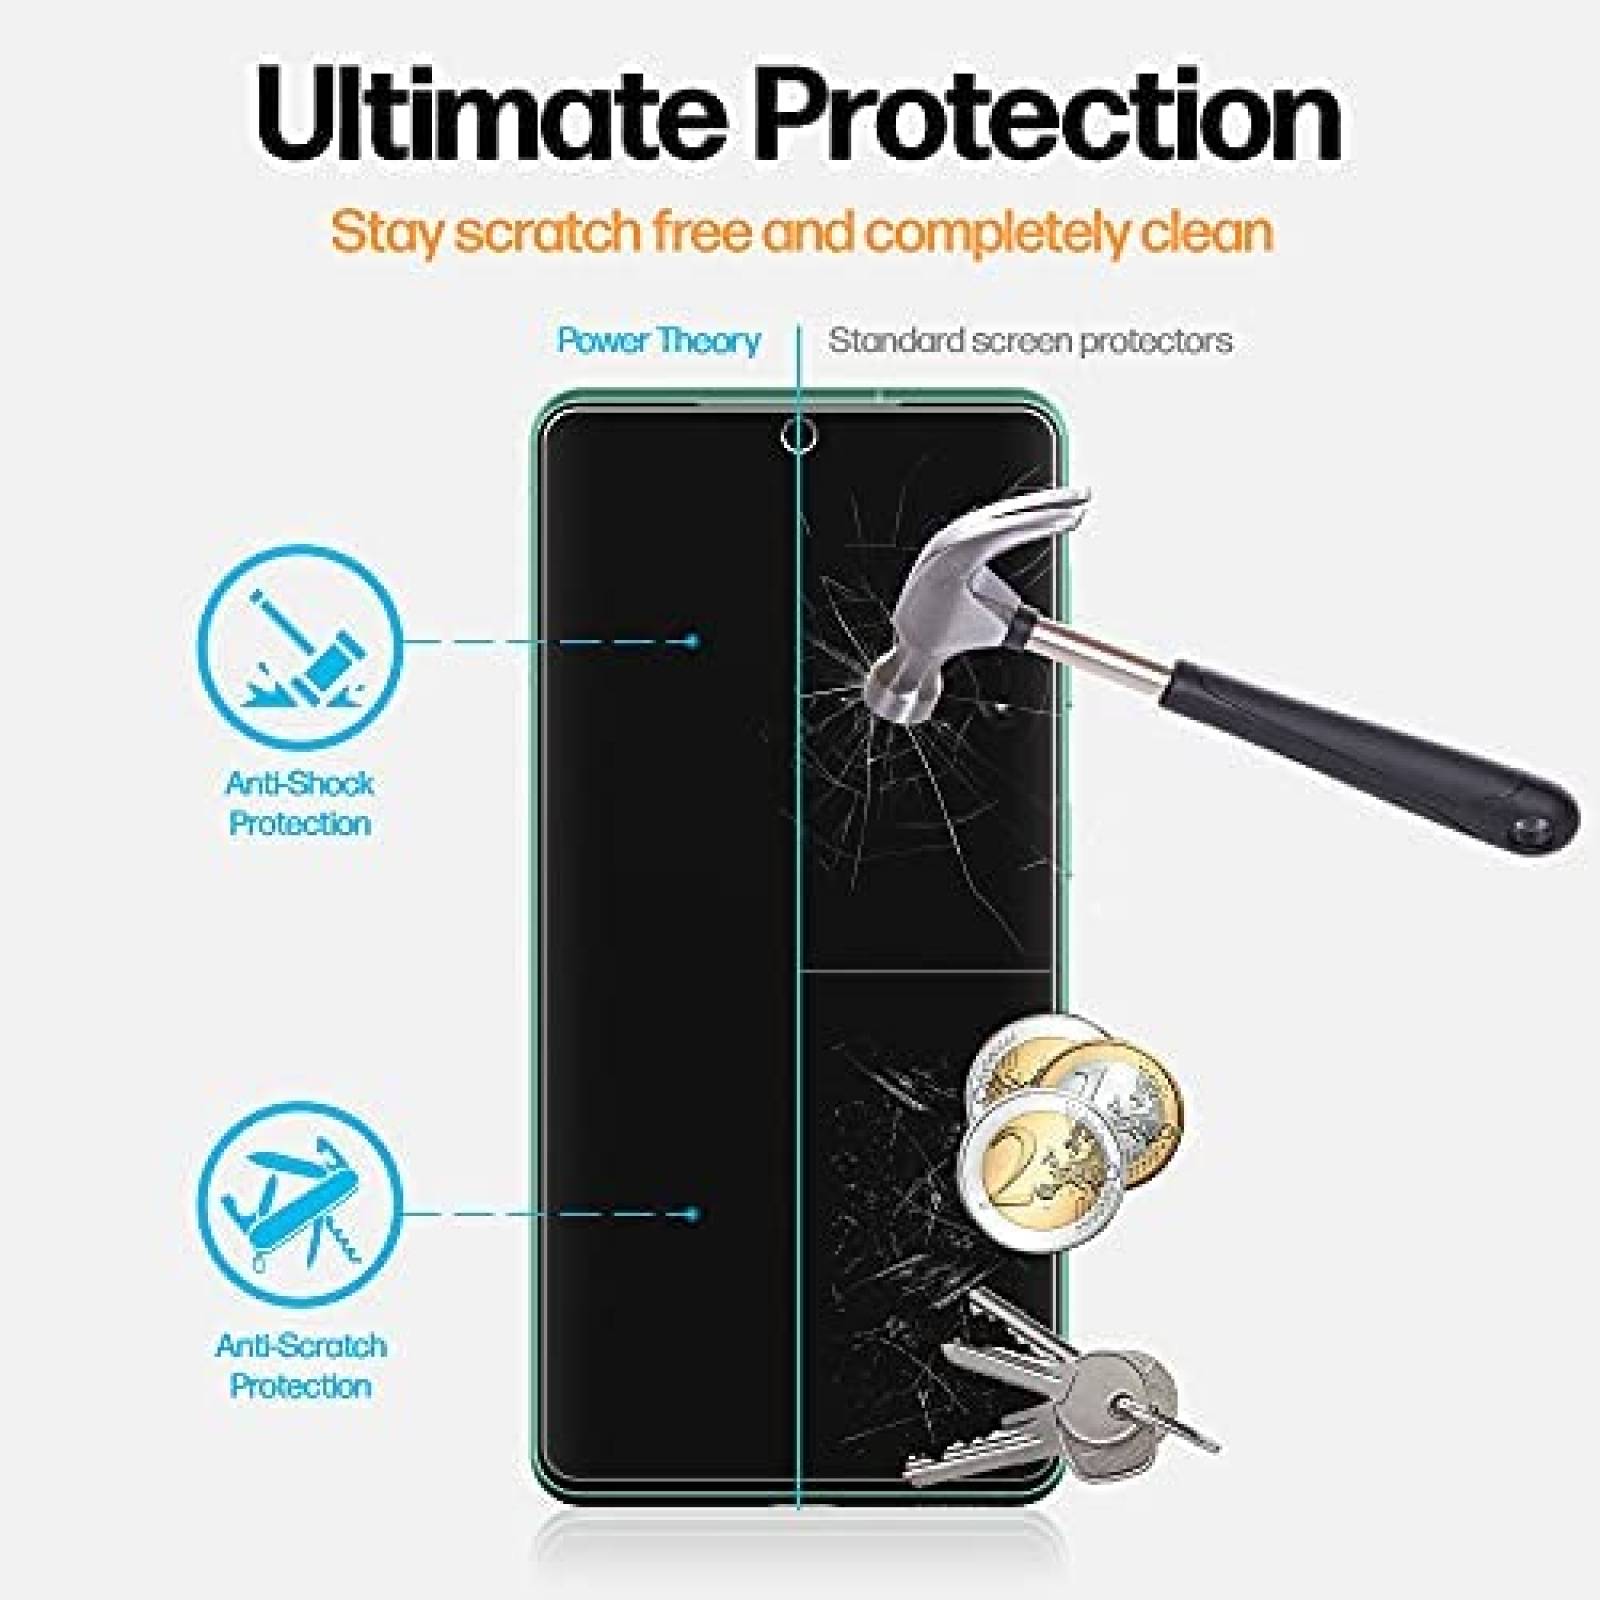 Protector de pantalla Power Theory de Samsung Galaxy S20 FE